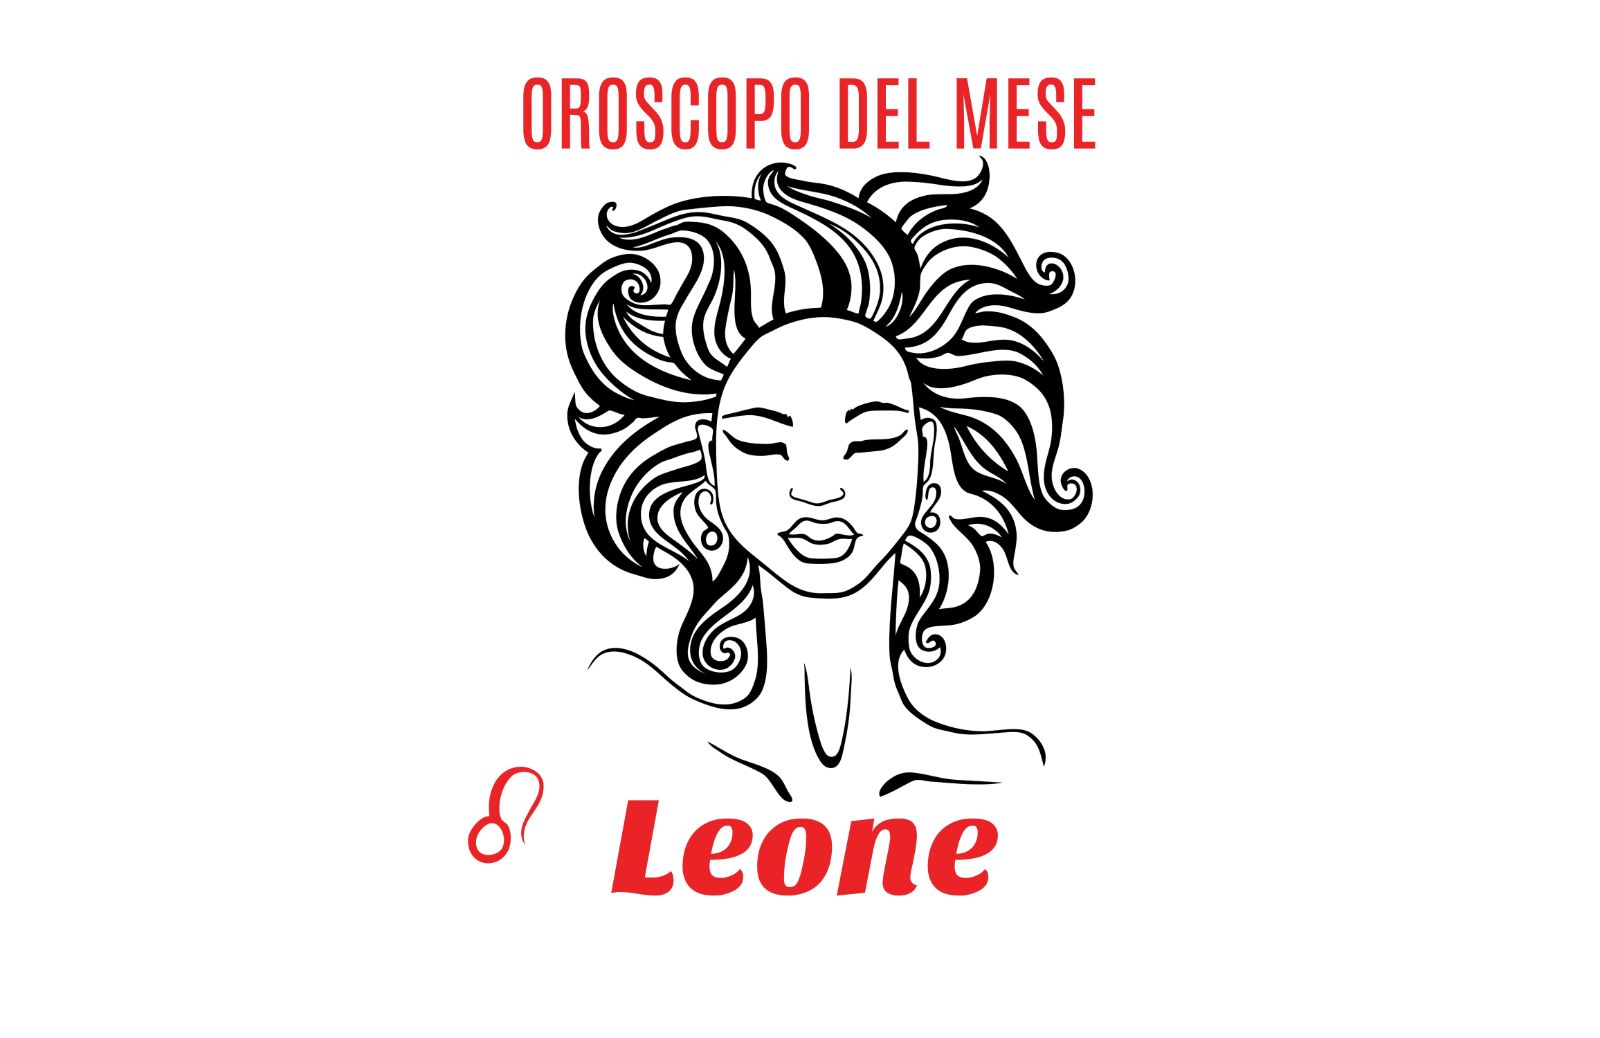 Oroscopo del mese: Leone - aprile 2019